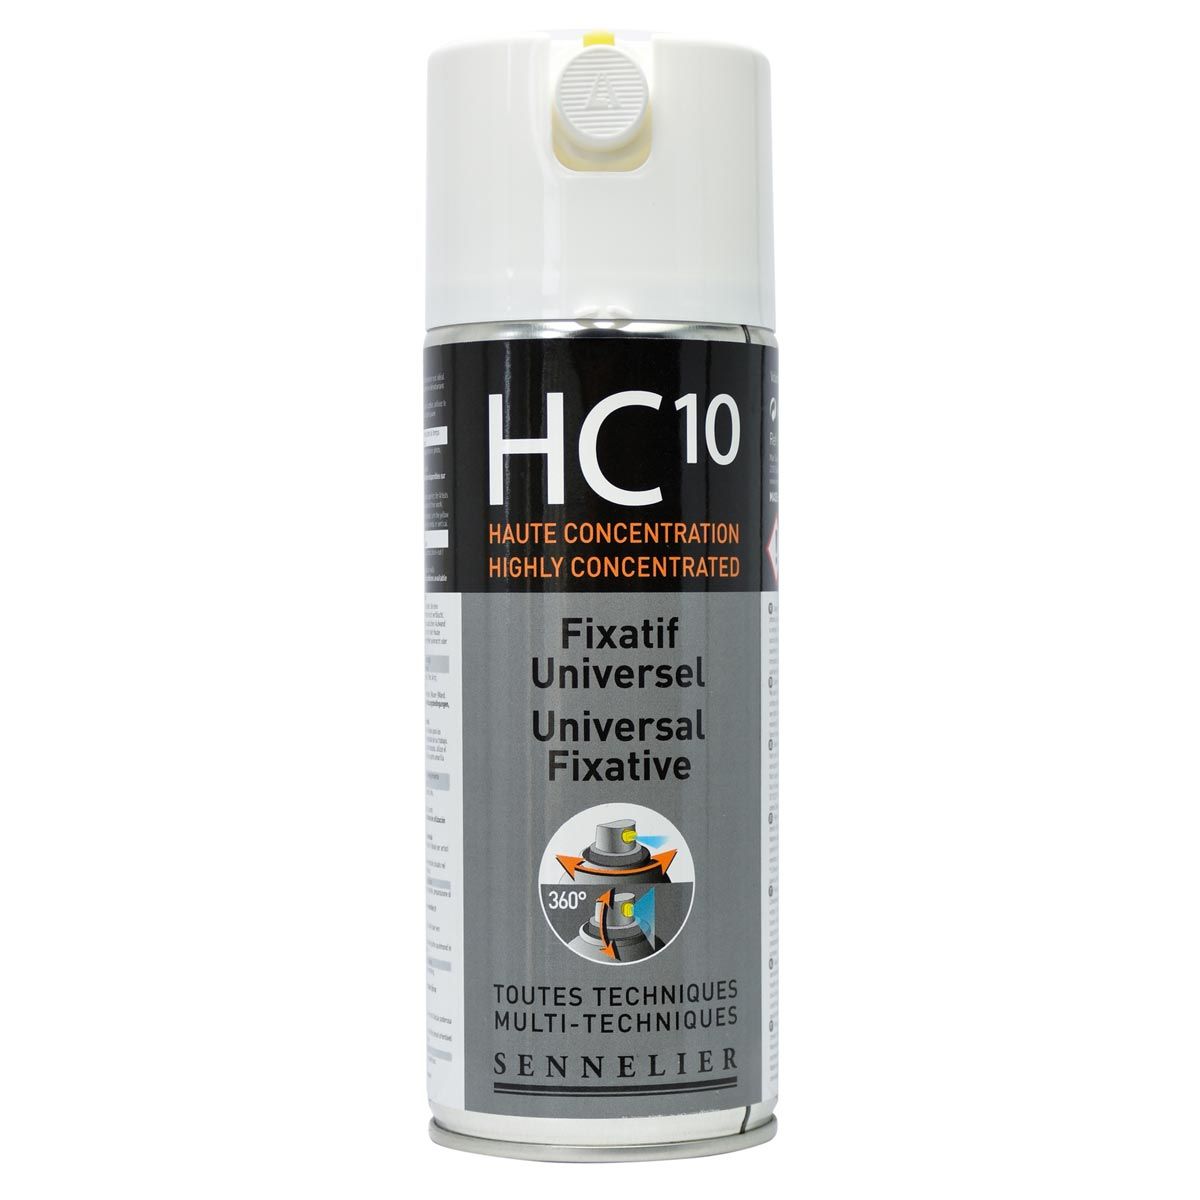 Sennelier HC10 Fixative Spray - Clear 294g (400ml)